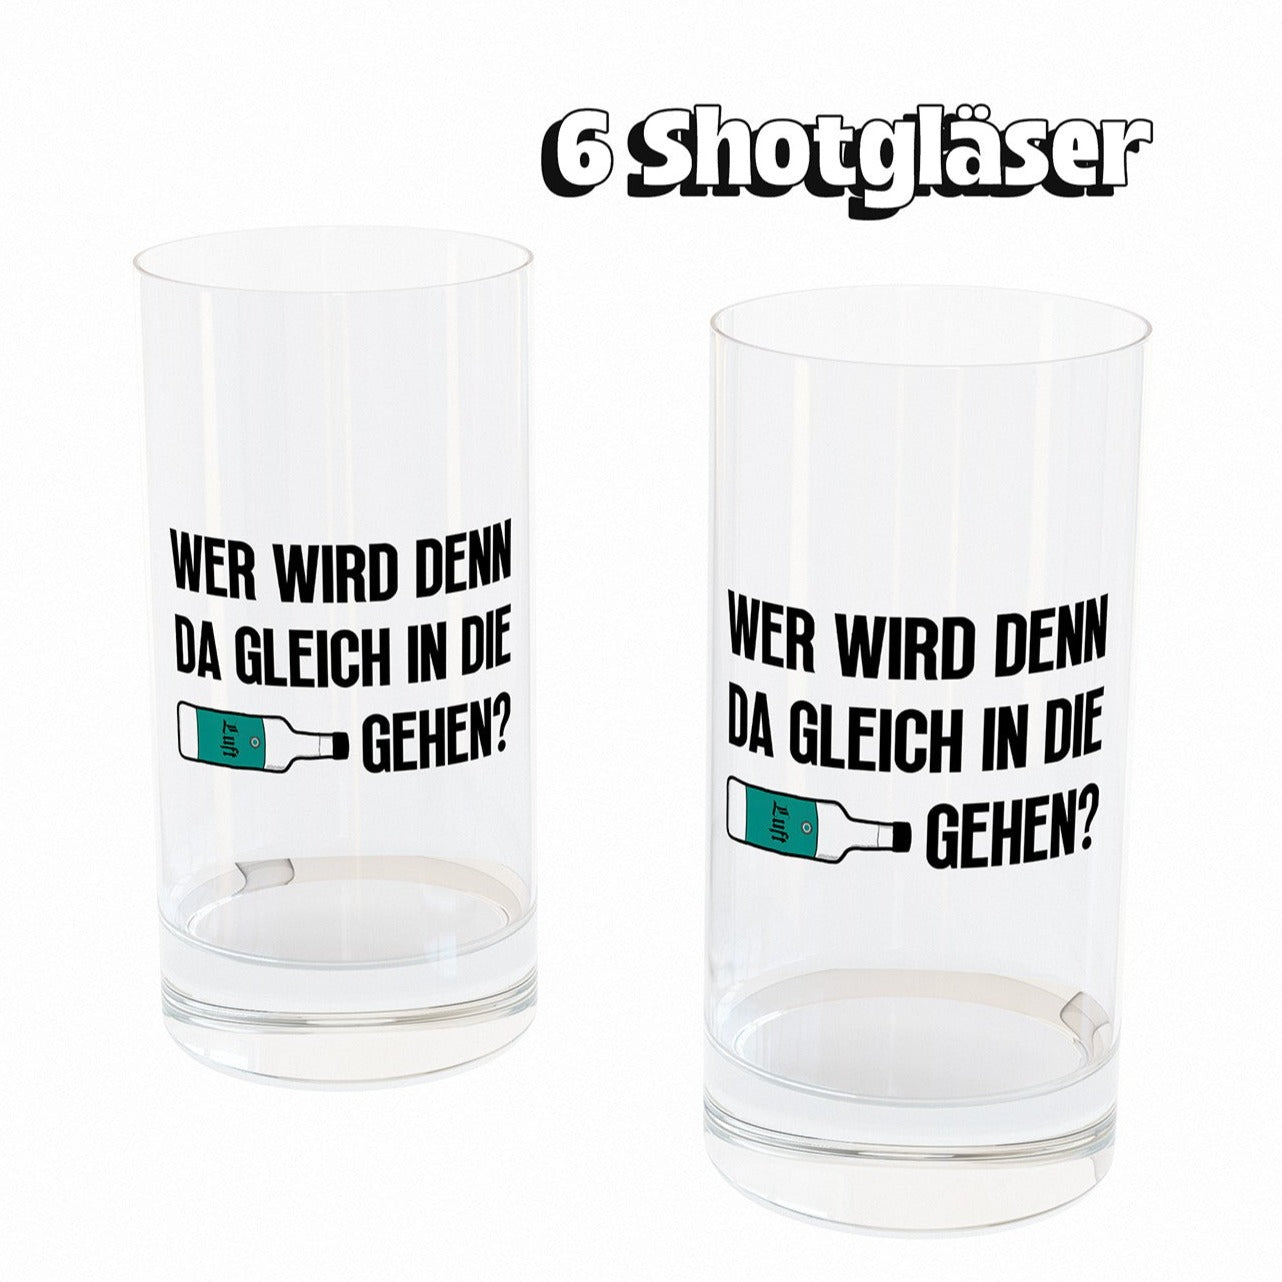 LUFT GEHEN - Shotglas 6er Set